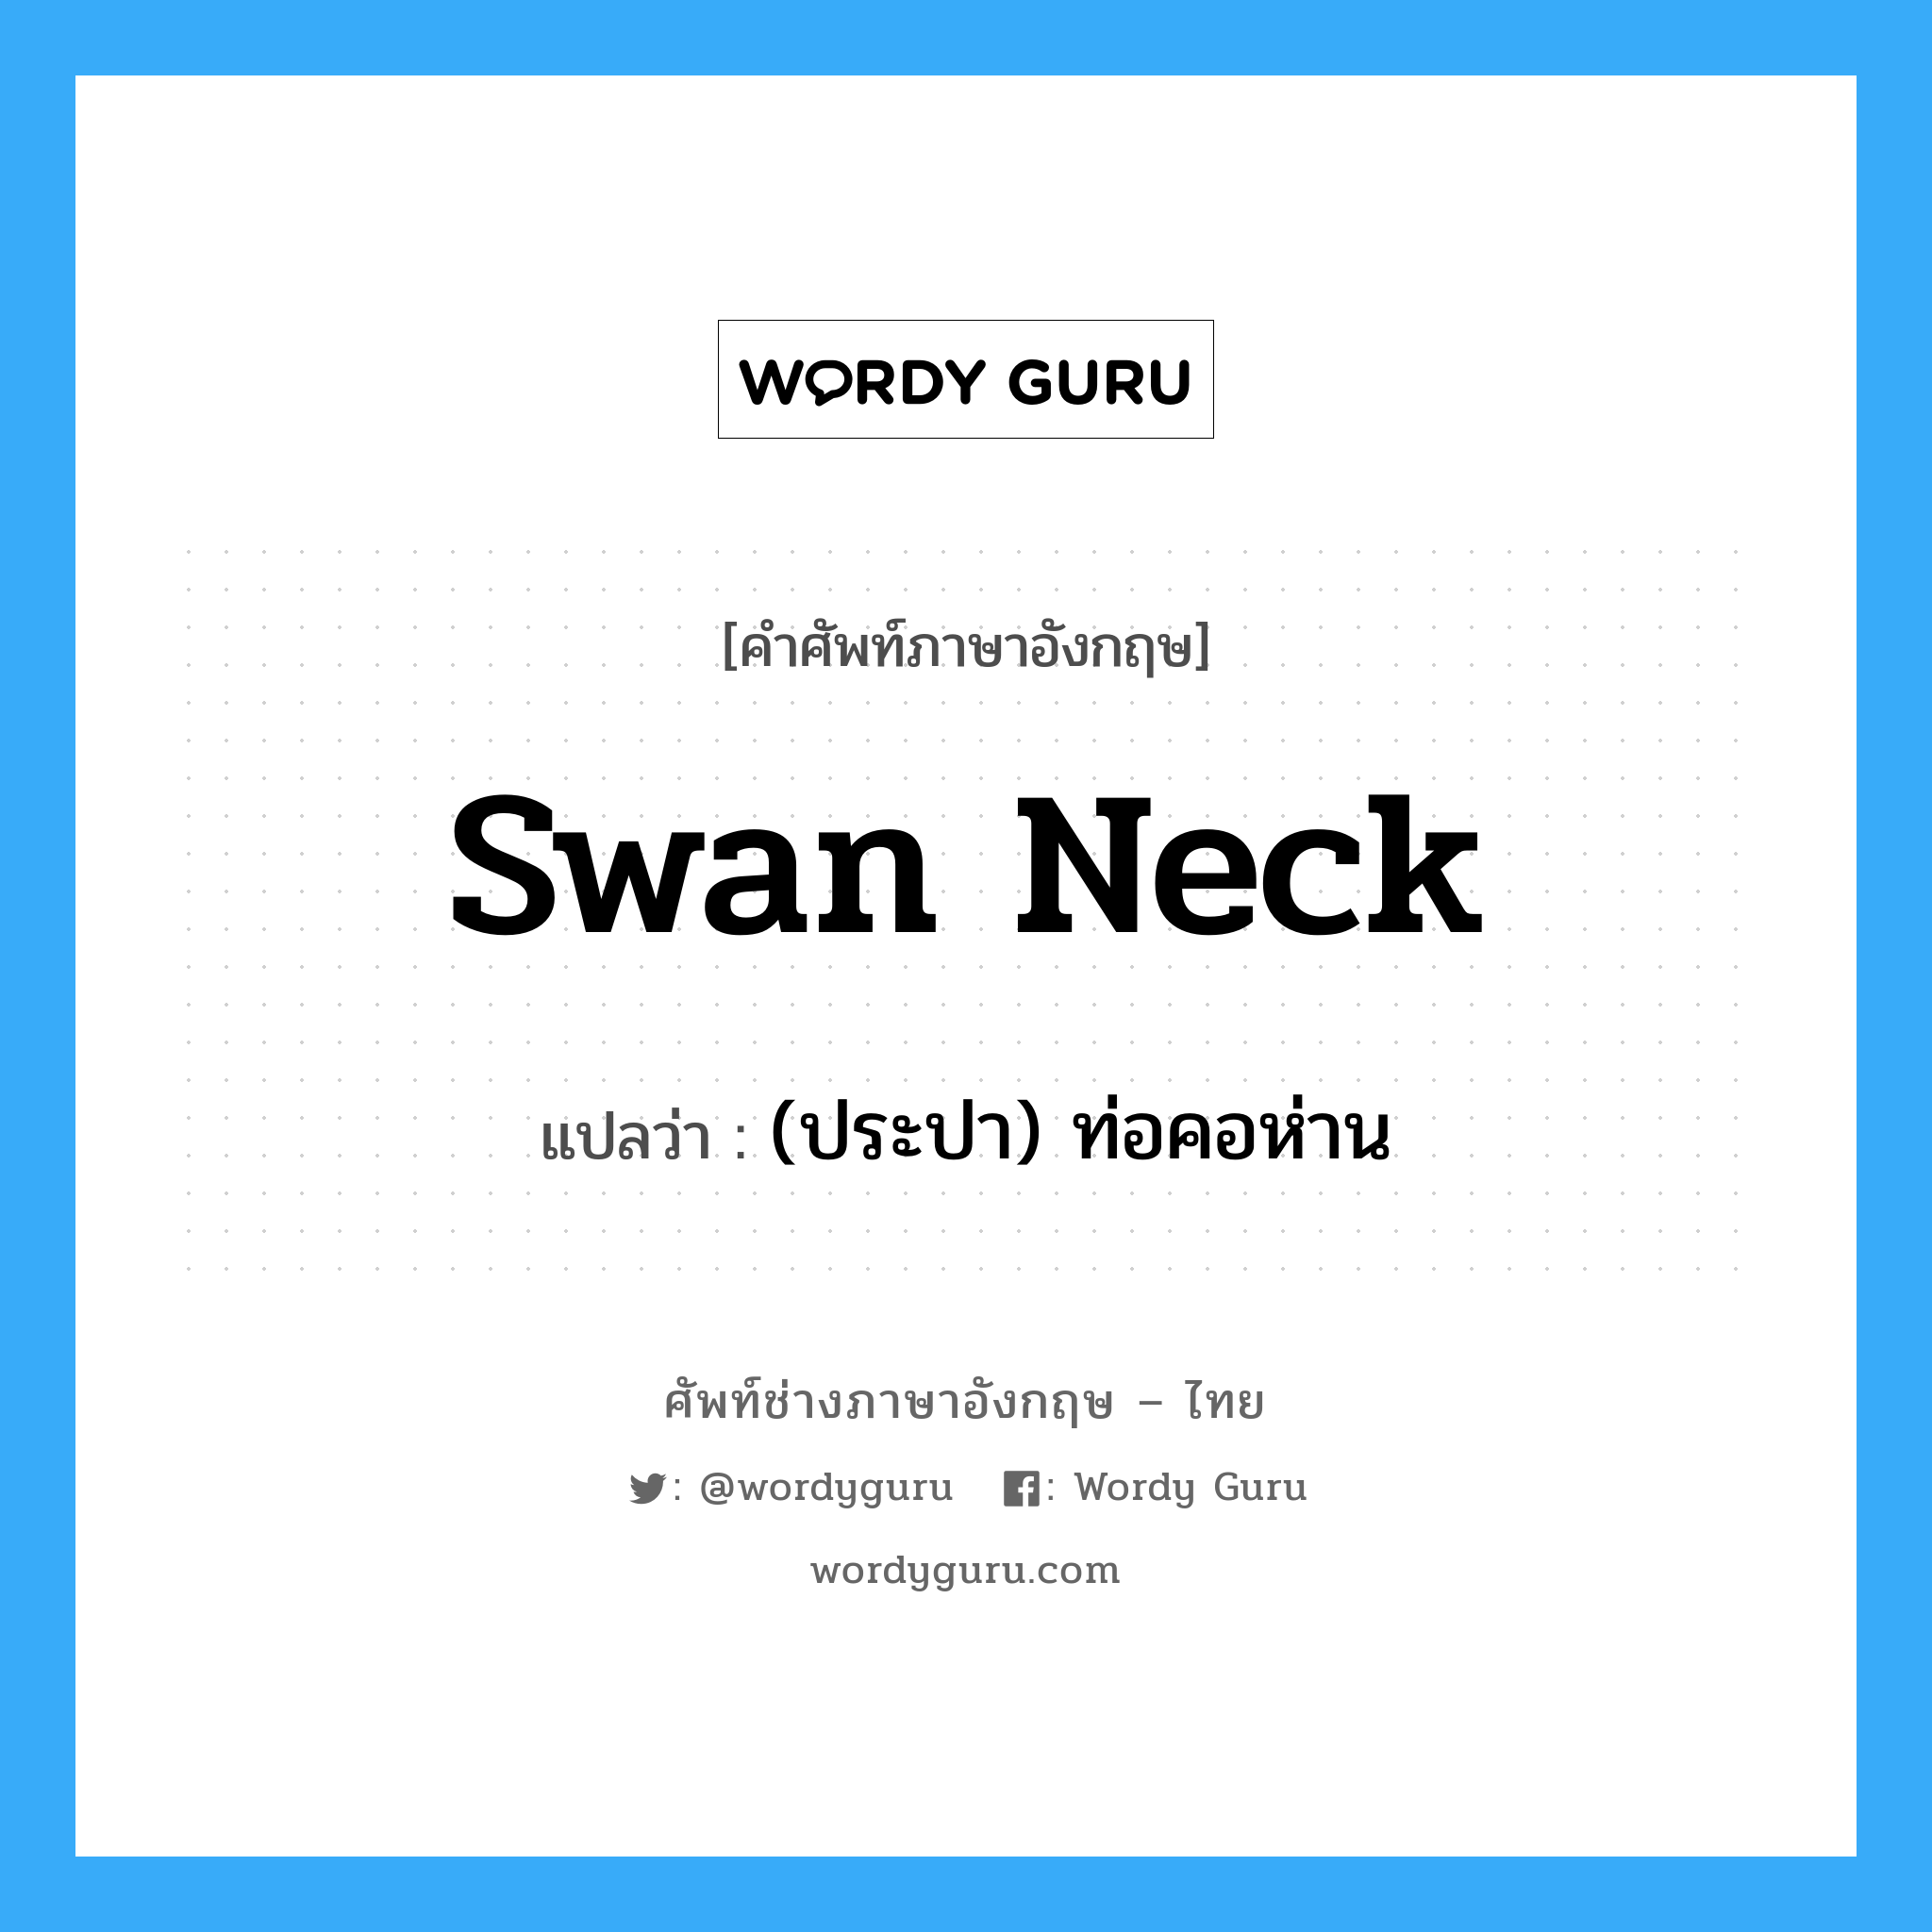 (ประปา) ท่อคอห่าน ภาษาอังกฤษ?, คำศัพท์ช่างภาษาอังกฤษ - ไทย (ประปา) ท่อคอห่าน คำศัพท์ภาษาอังกฤษ (ประปา) ท่อคอห่าน แปลว่า swan neck